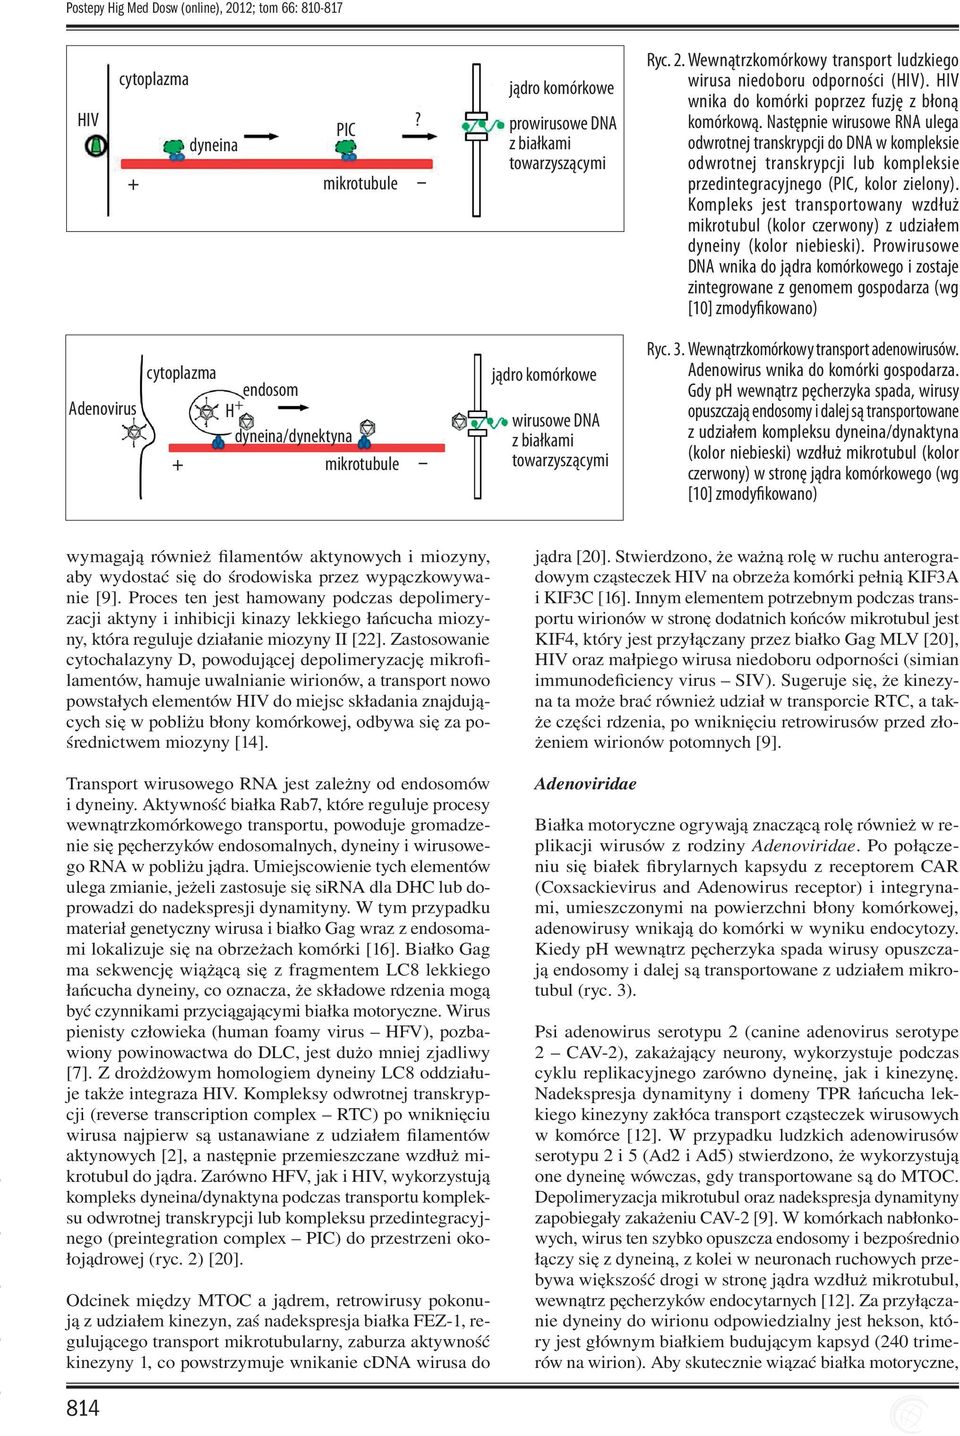 Następnie wirusowe RNA ulega odwrotnej transkrypcji do DNA w kompleksie odwrotnej transkrypcji lub kompleksie przedintegracyjnego (PIC, kolor zielony).